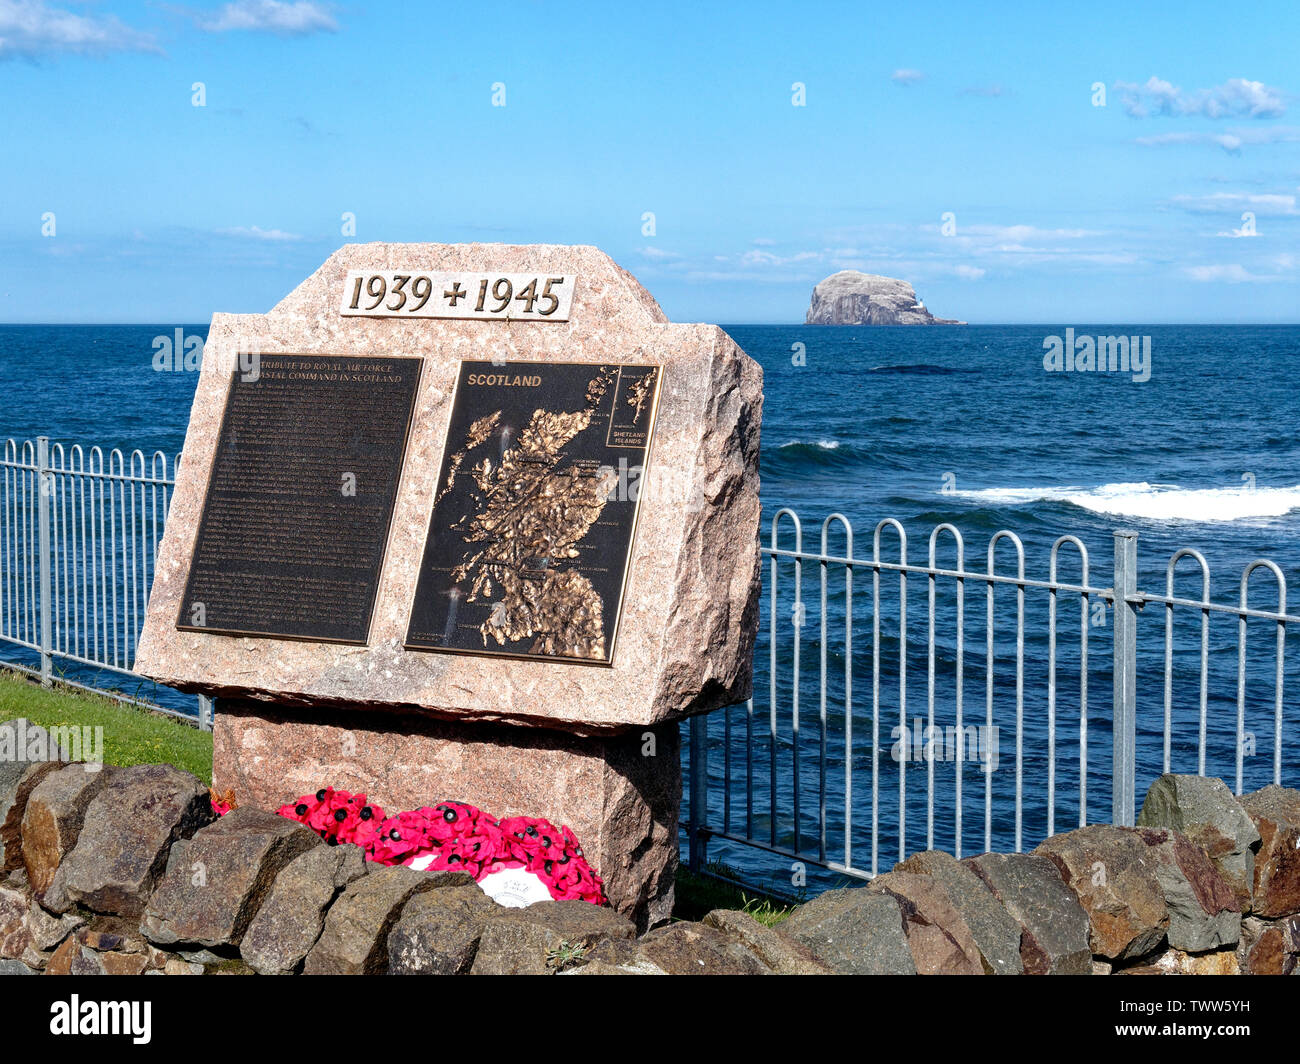 Hommage commémoratif au Coastal Command de la Royal Air Force près du centre d'oiseaux de mer, North Berwick, East Lothian, Ecosse, Royaume-Uni. Banque D'Images